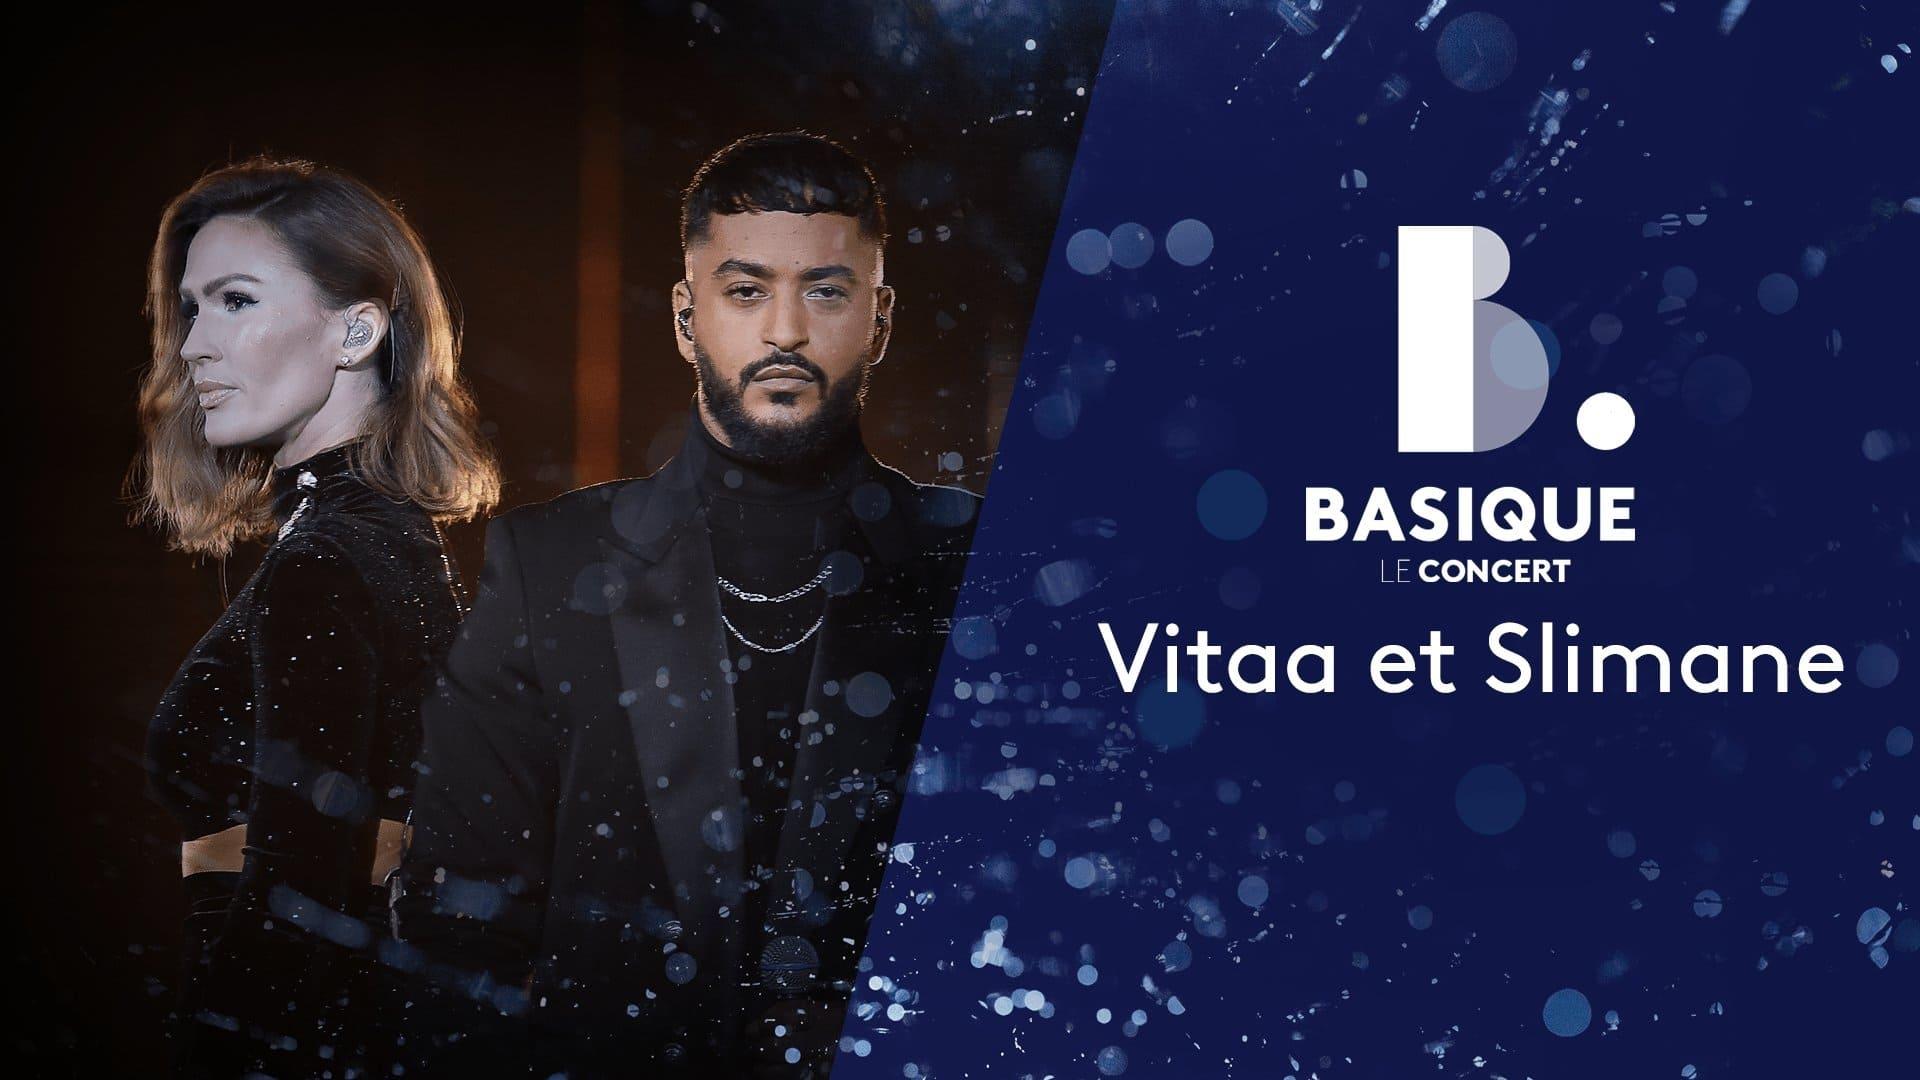 Vitaa et Slimane - Basique, le concert 2020 backdrop